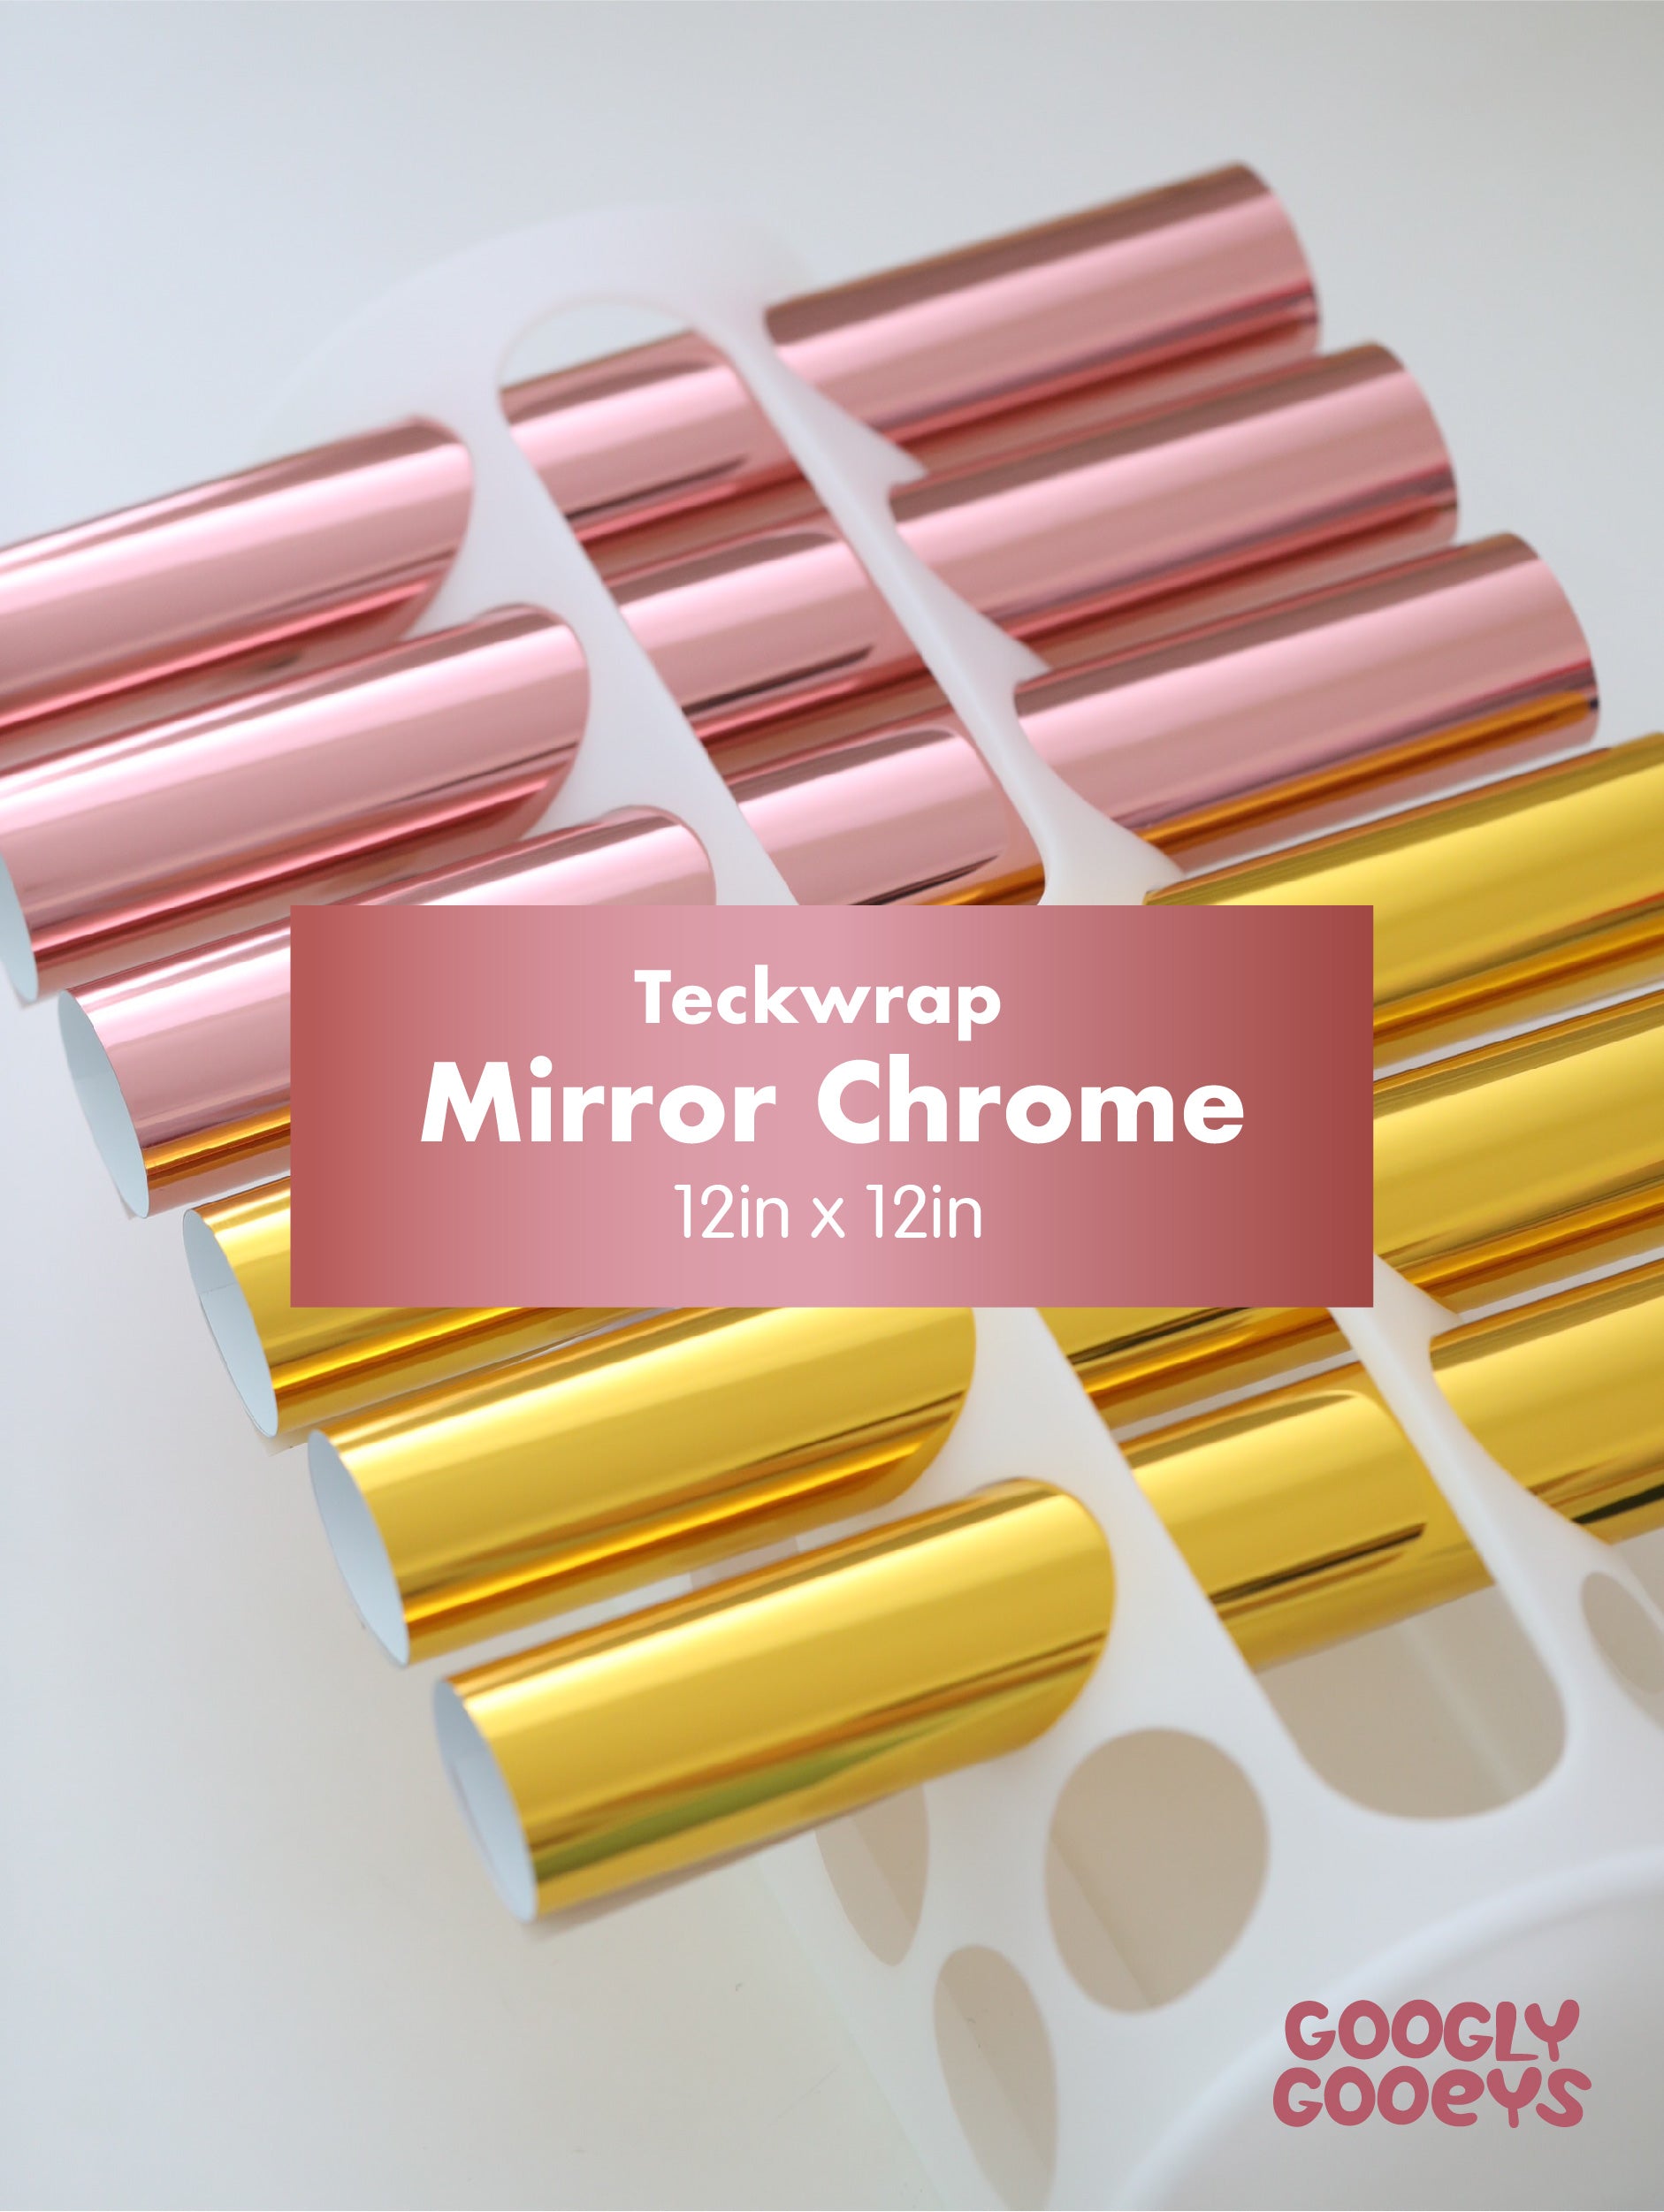 Teckwrap Mirror Chrome Adhesive Vinyl Stickers